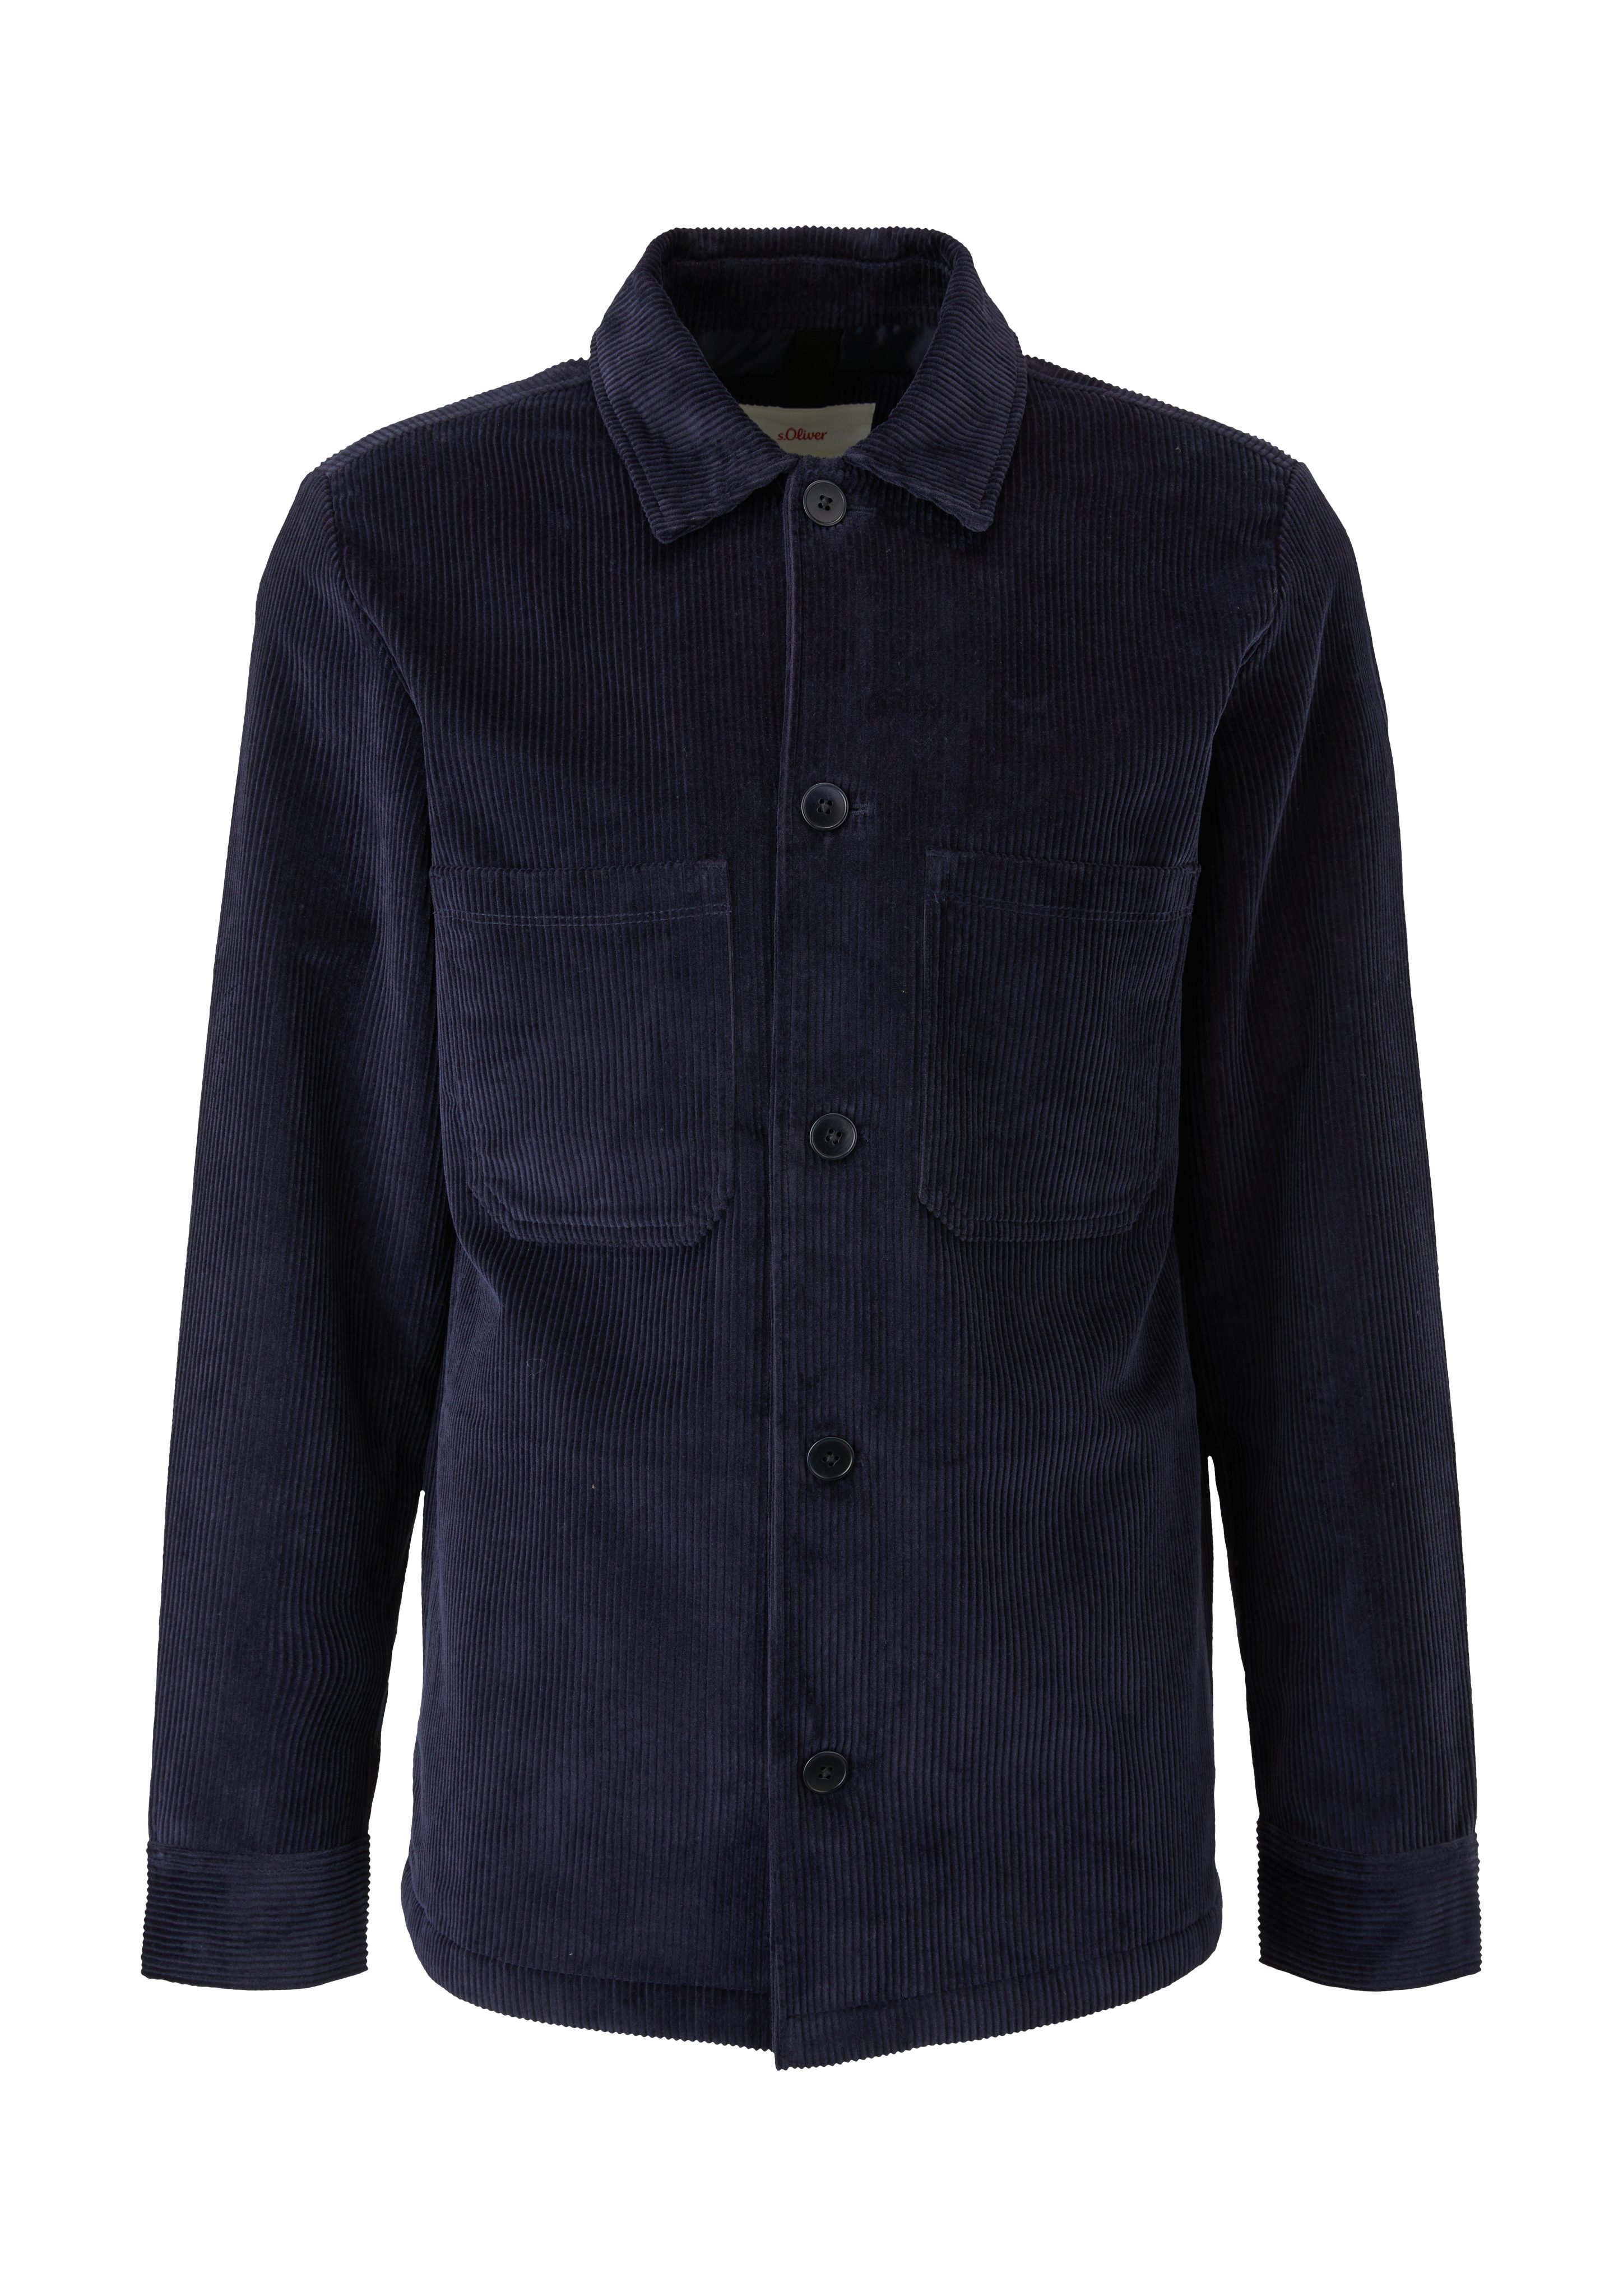 s.Oliver blue Cord Overshirt aus Outdoorjacke dark